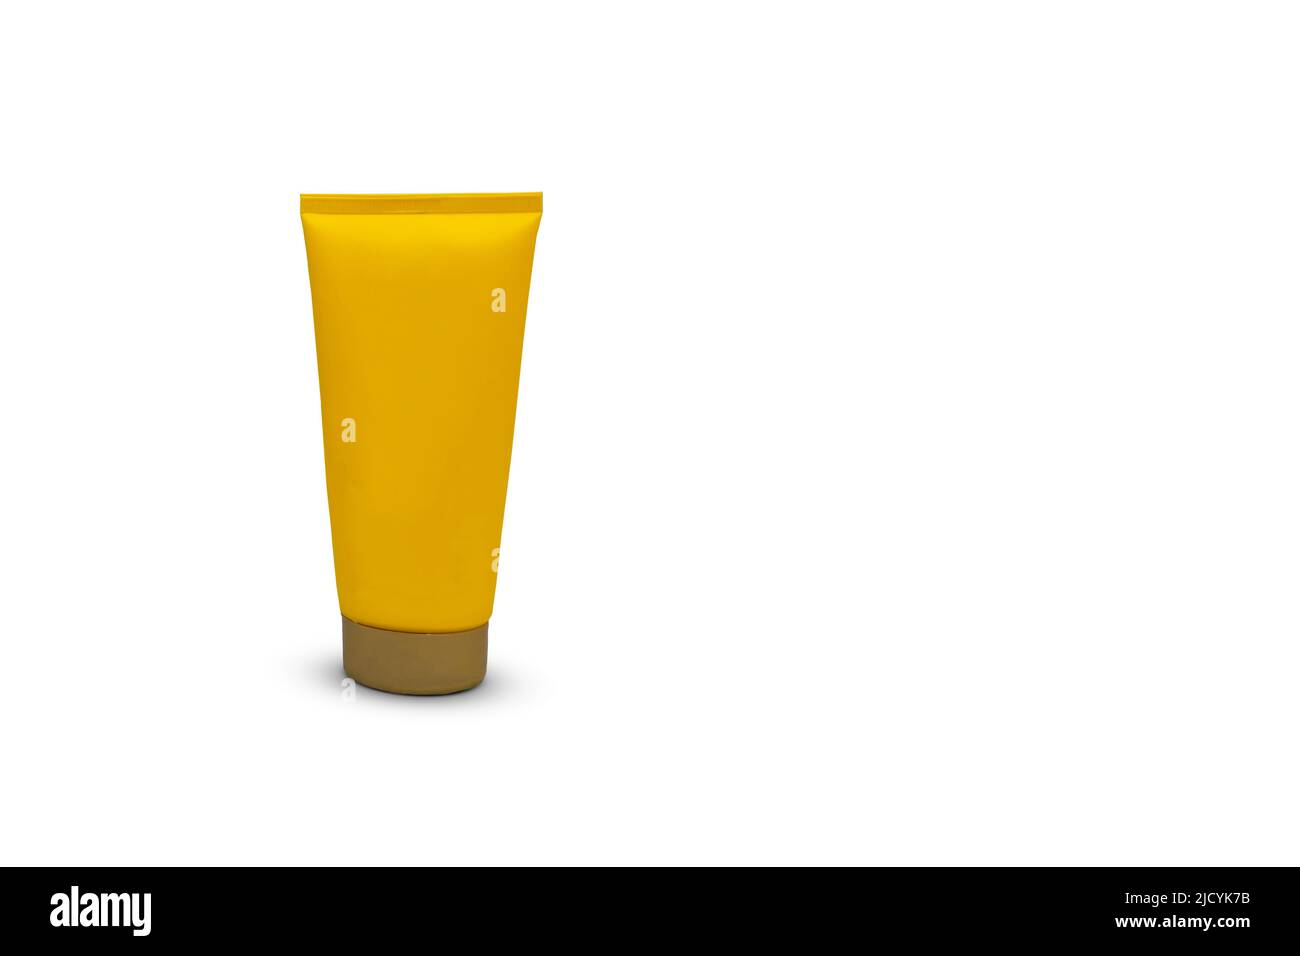 Gelbe Tube Verpackung für Sonnencreme, Kosmetik- und Körperpflegecreme isoliert auf weißem Hintergrund. Schlauch mit Feuchtigkeitspflege ohne Markenaufdruck. Stockfoto